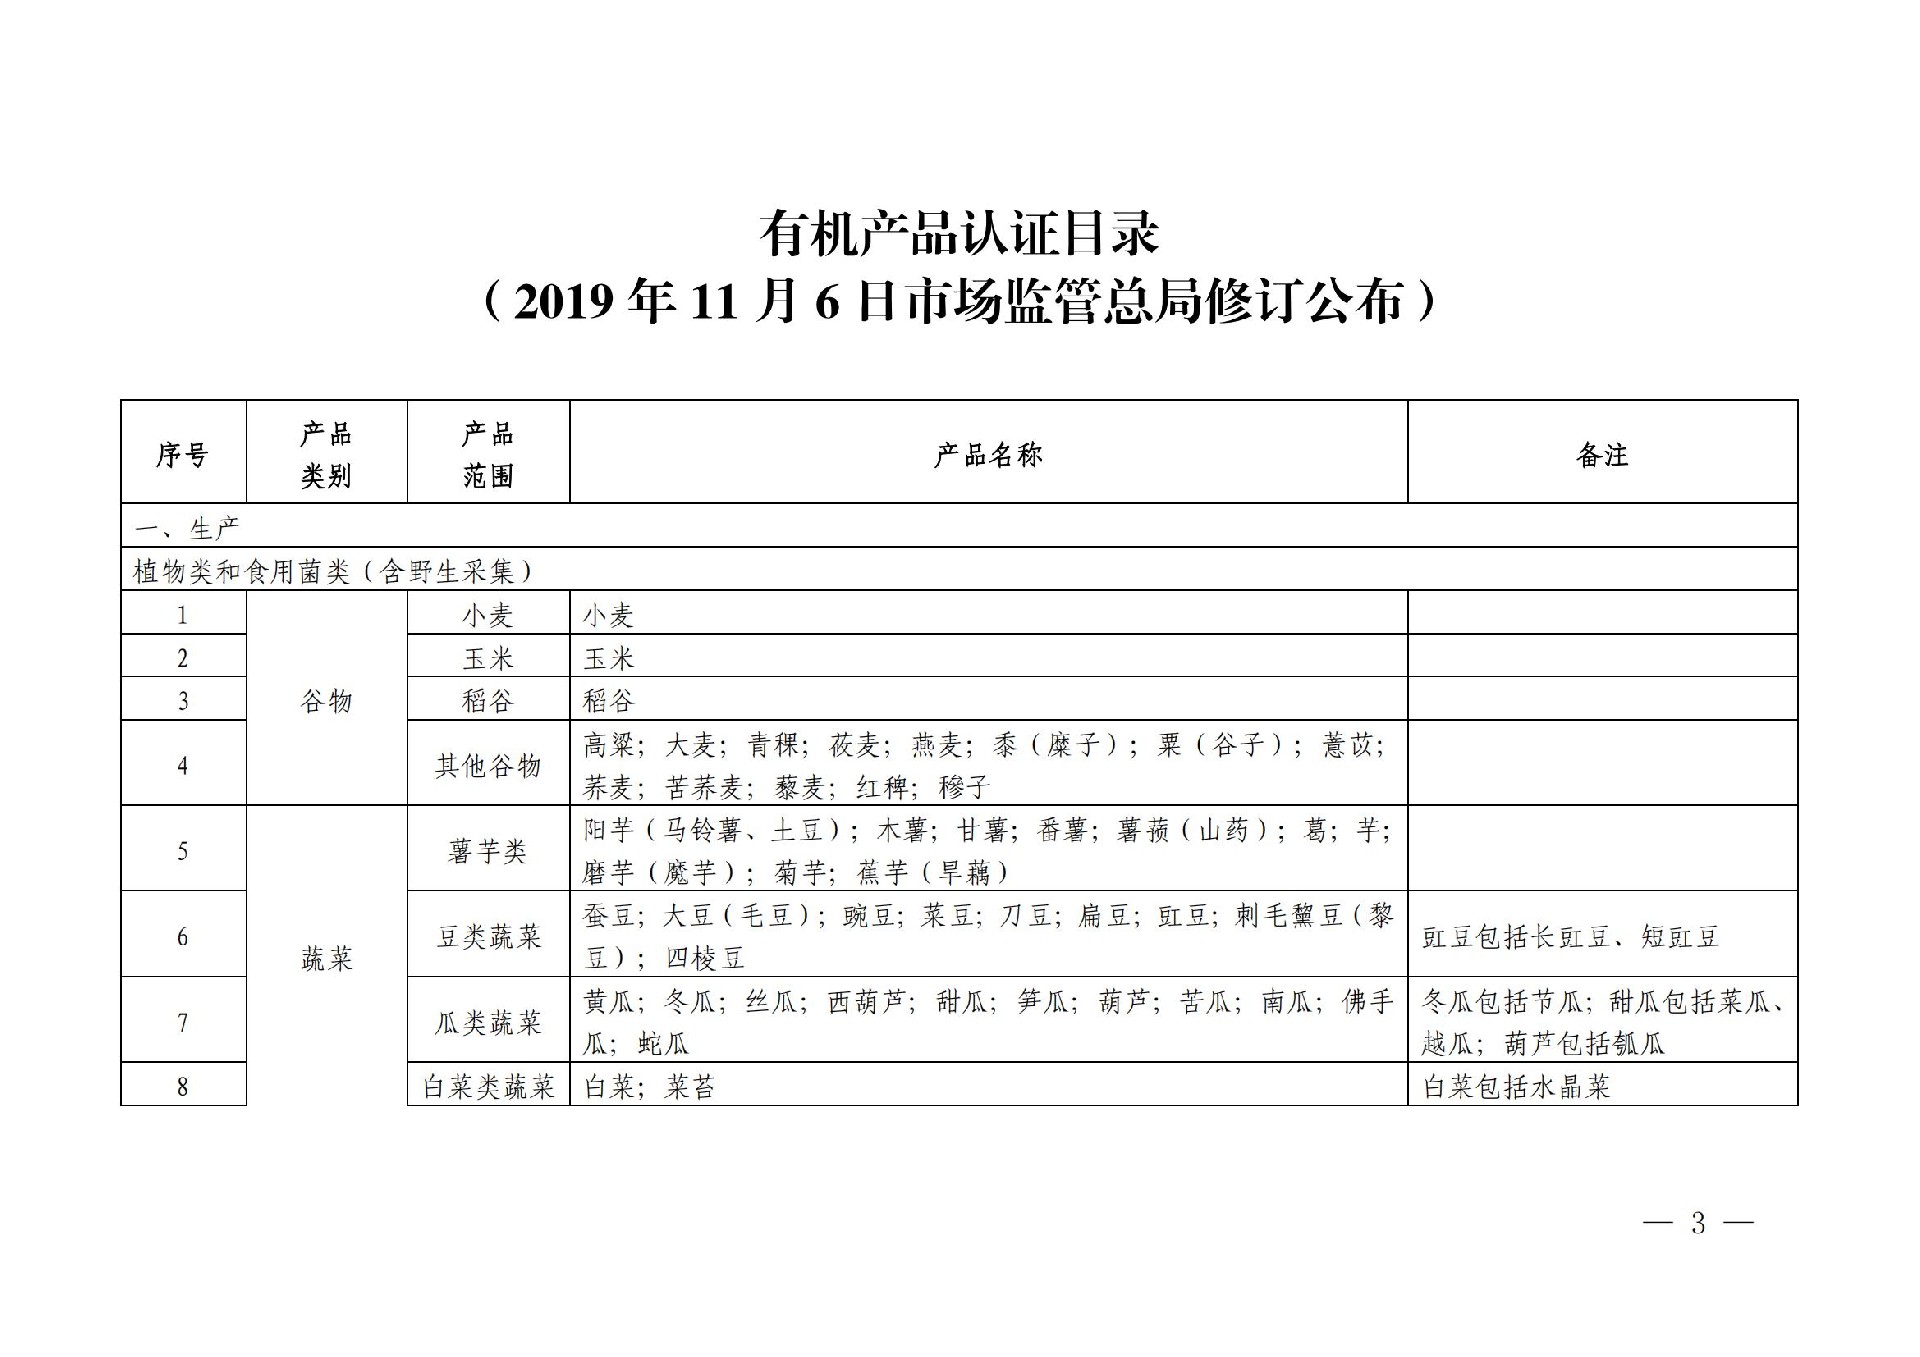 有机产品认证目录【认监委2019年第22号公告】(1)_02.jpg